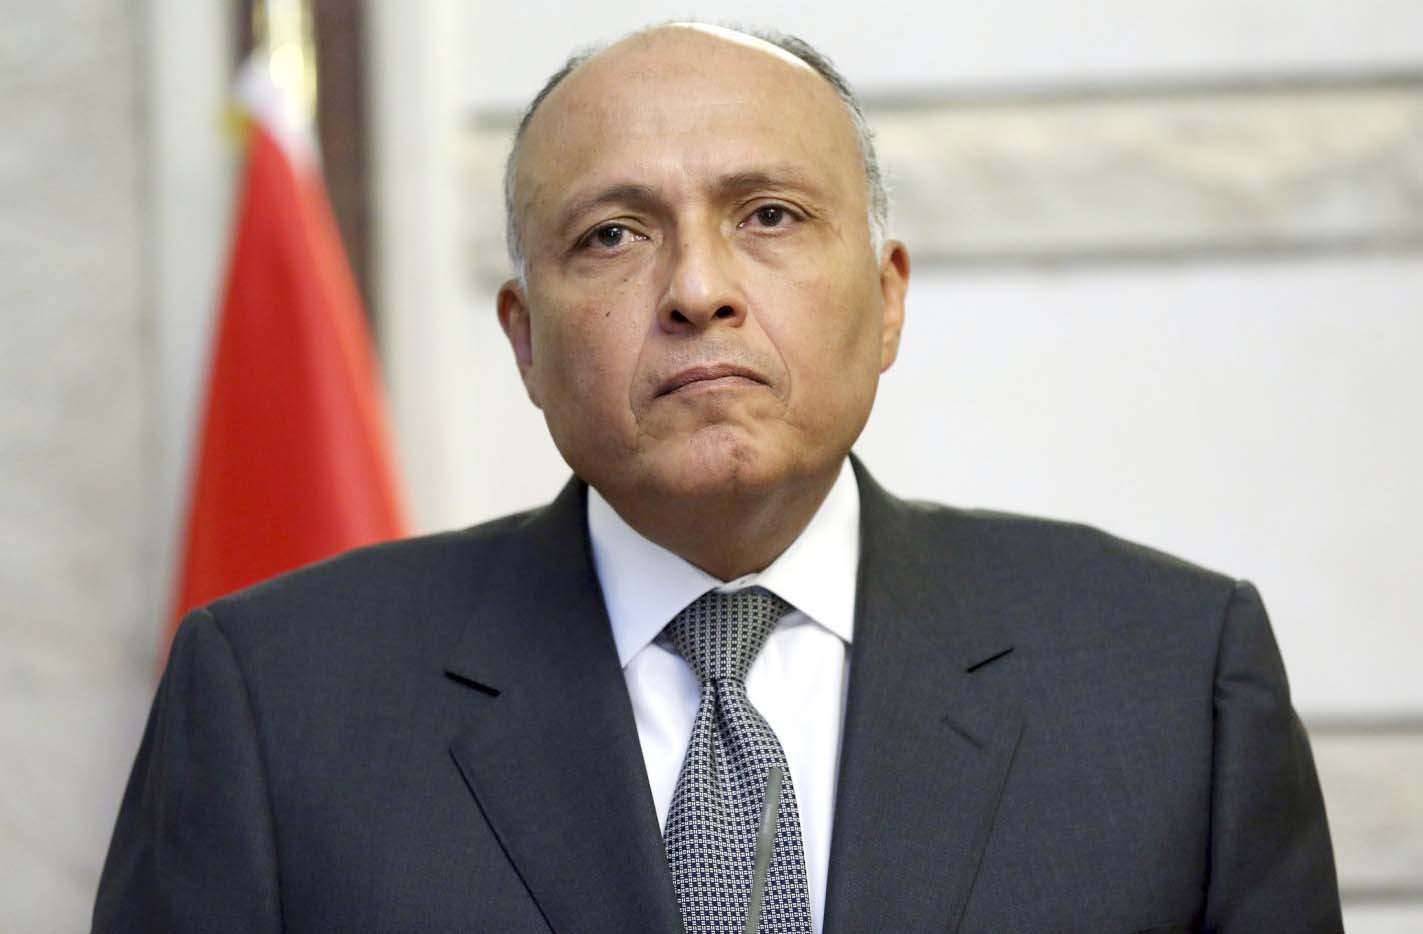   وزير الخارجية: رؤية مصر كانت واضحة بشأن الرسوم المسيئة للنبى